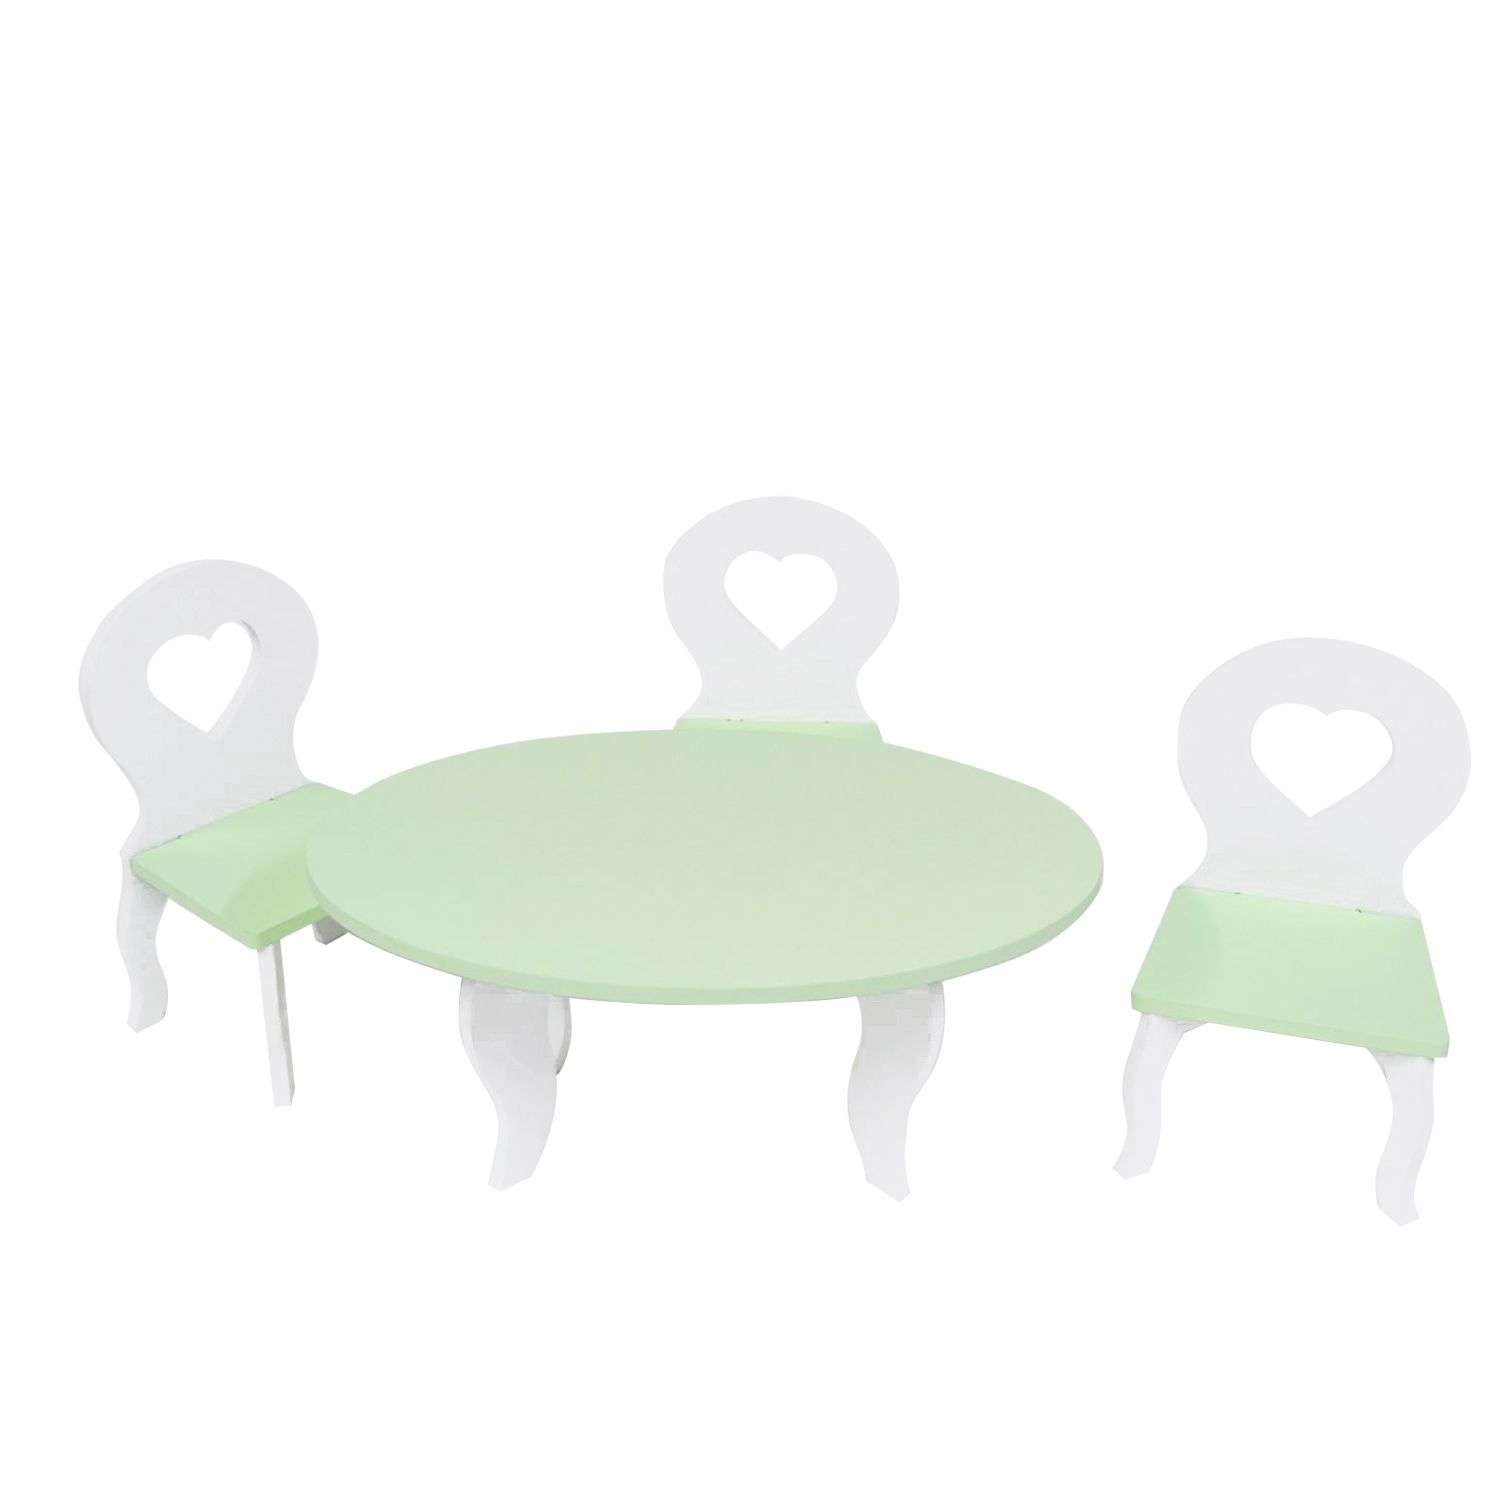 Мебель для кукол Paremo Шик мини 4предмета Салатовый PFD120-51M PFD120-51M - фото 1